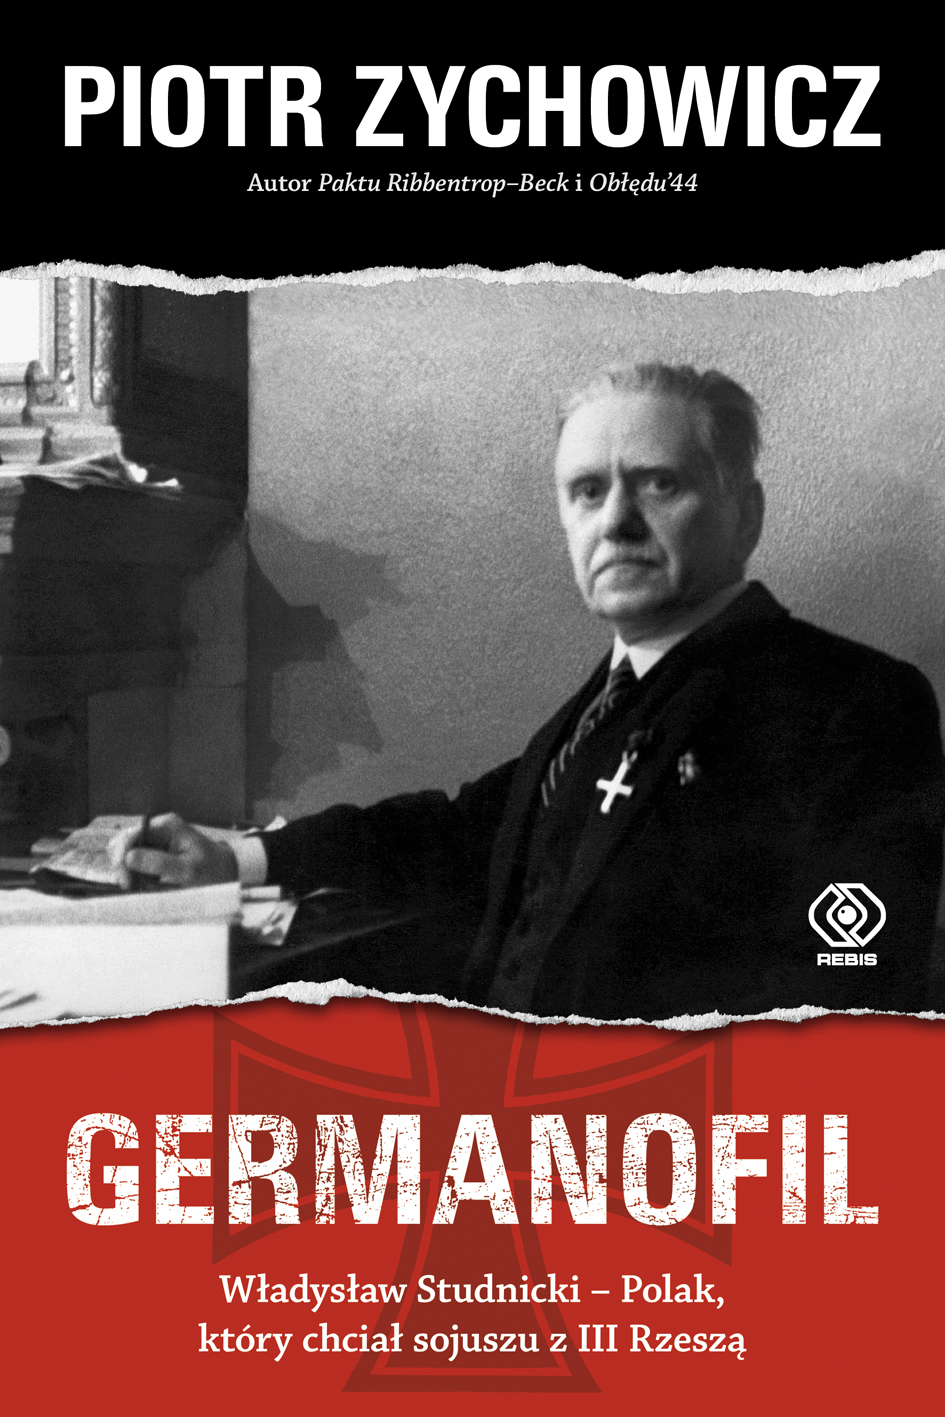 "Germanofil", nowa ksiązka Piotra Zychowicza 